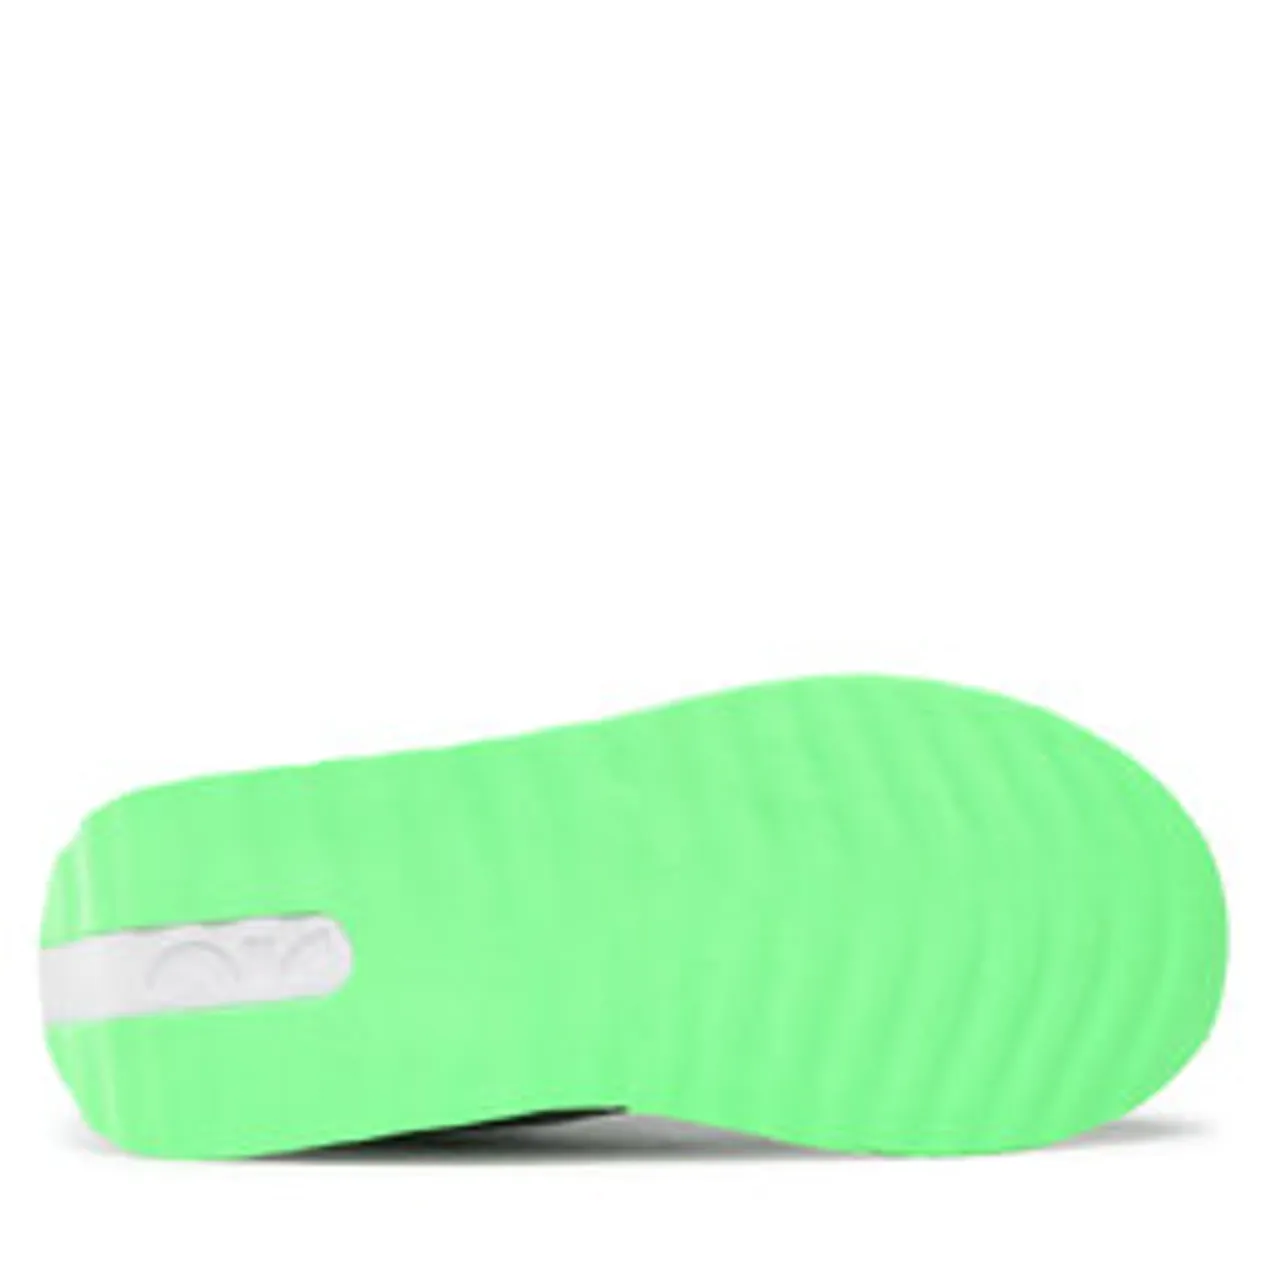 Schuhe Nike Air Max Dawn (Gs) DH3157 001 Black/Chrome/Green Strike